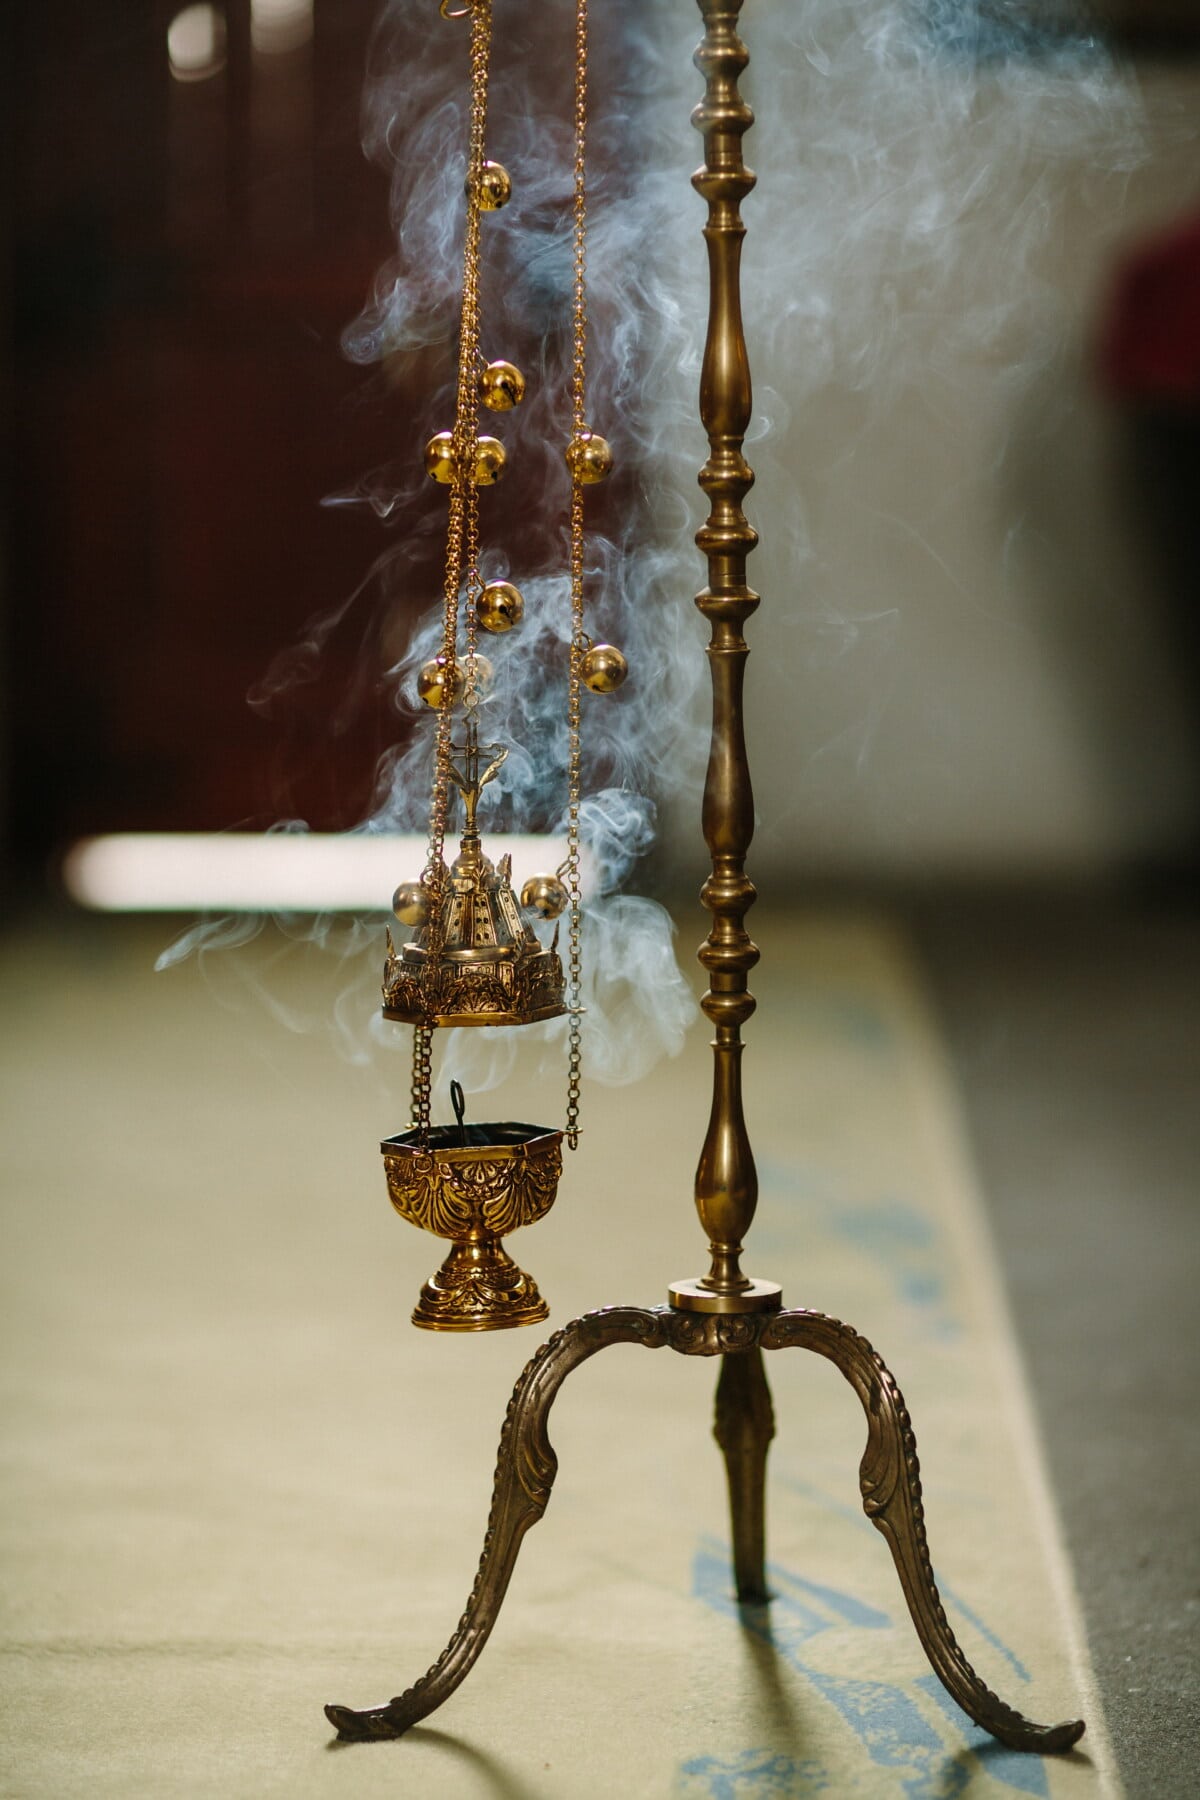 fatto a mano, spiritualità, culto, cristianesimo, oggetto, fumo, decorazione, catena, in ottone, oggetto d'antiquariato